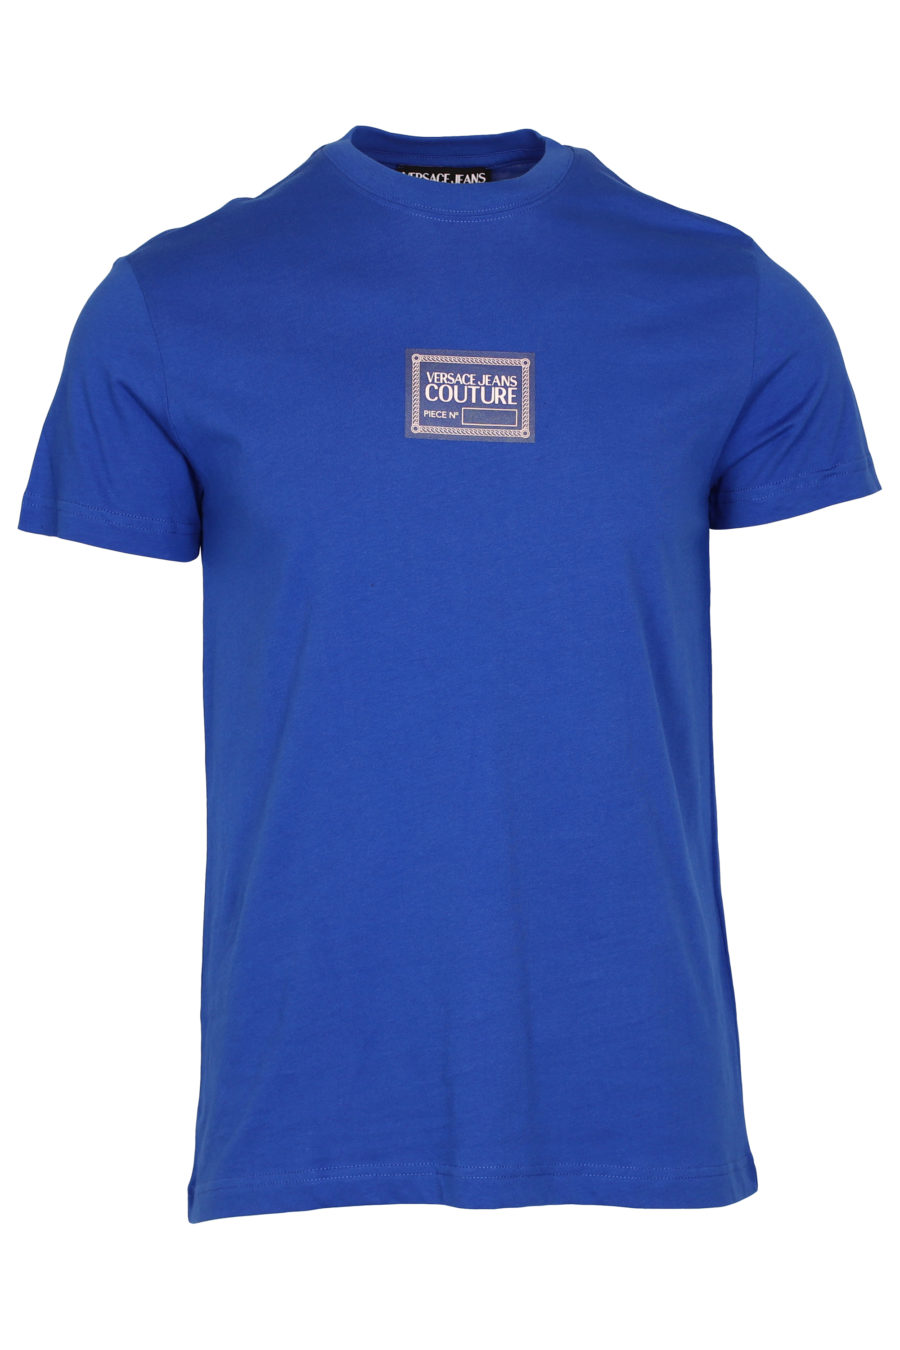 Camiseta azul con logotipo pequeño - IMG 9352